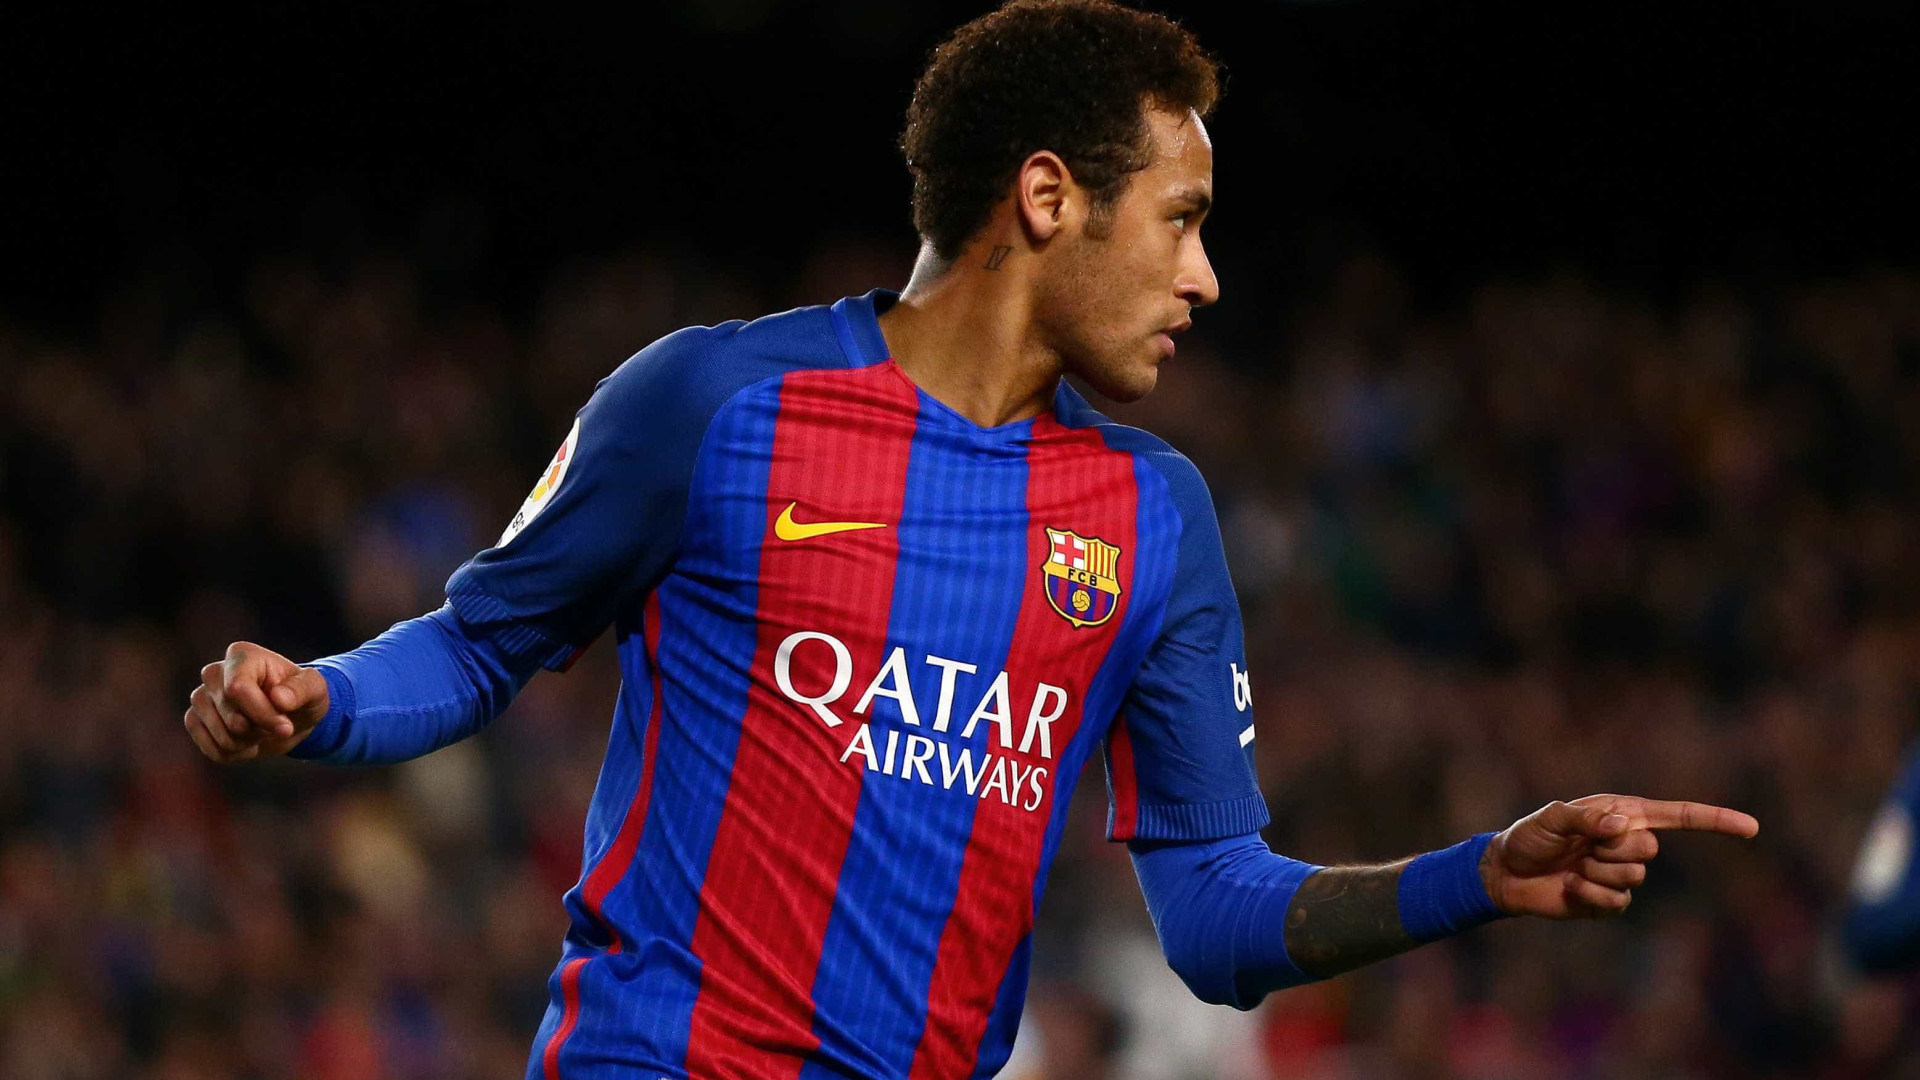 Neymar é o jogador mais rápido do Barcelona,
diz jornal espanhol